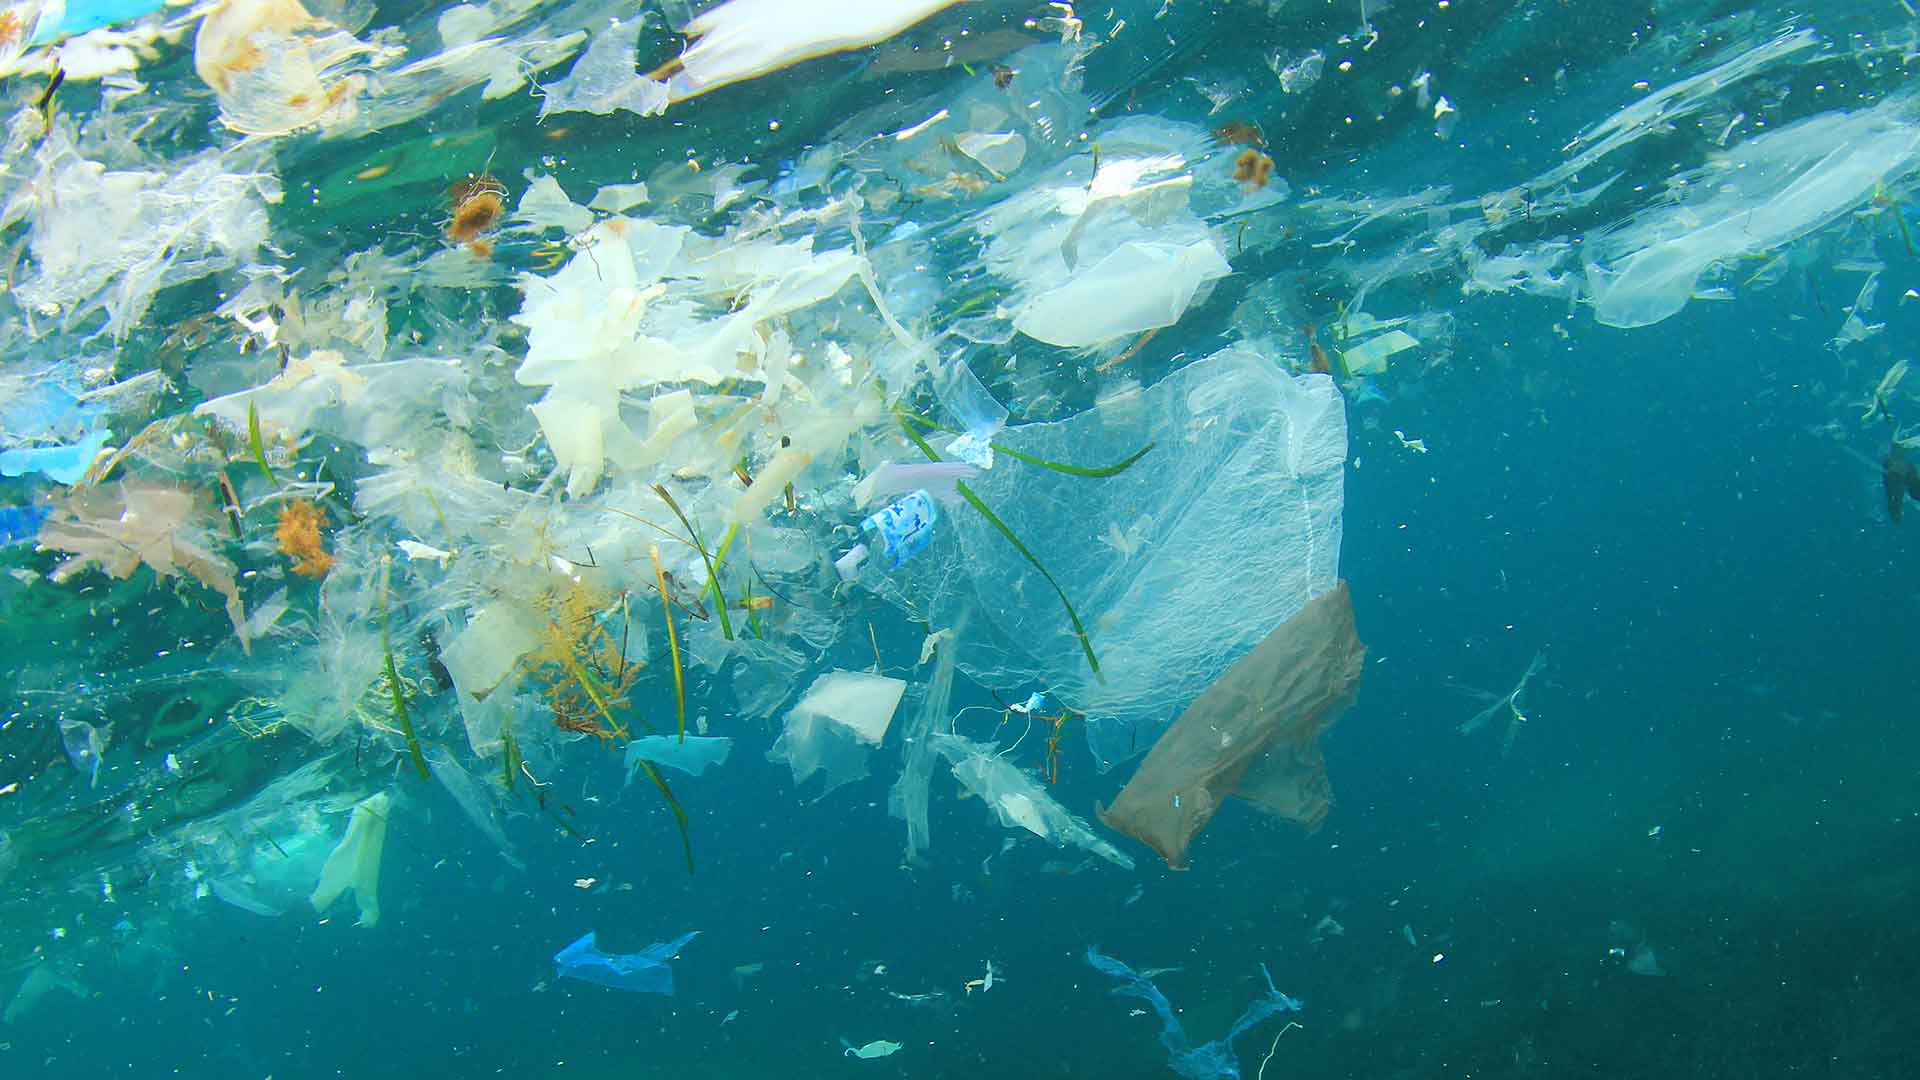 Pescatori-spazzini, ora potranno ripulire i mari dalla plastica